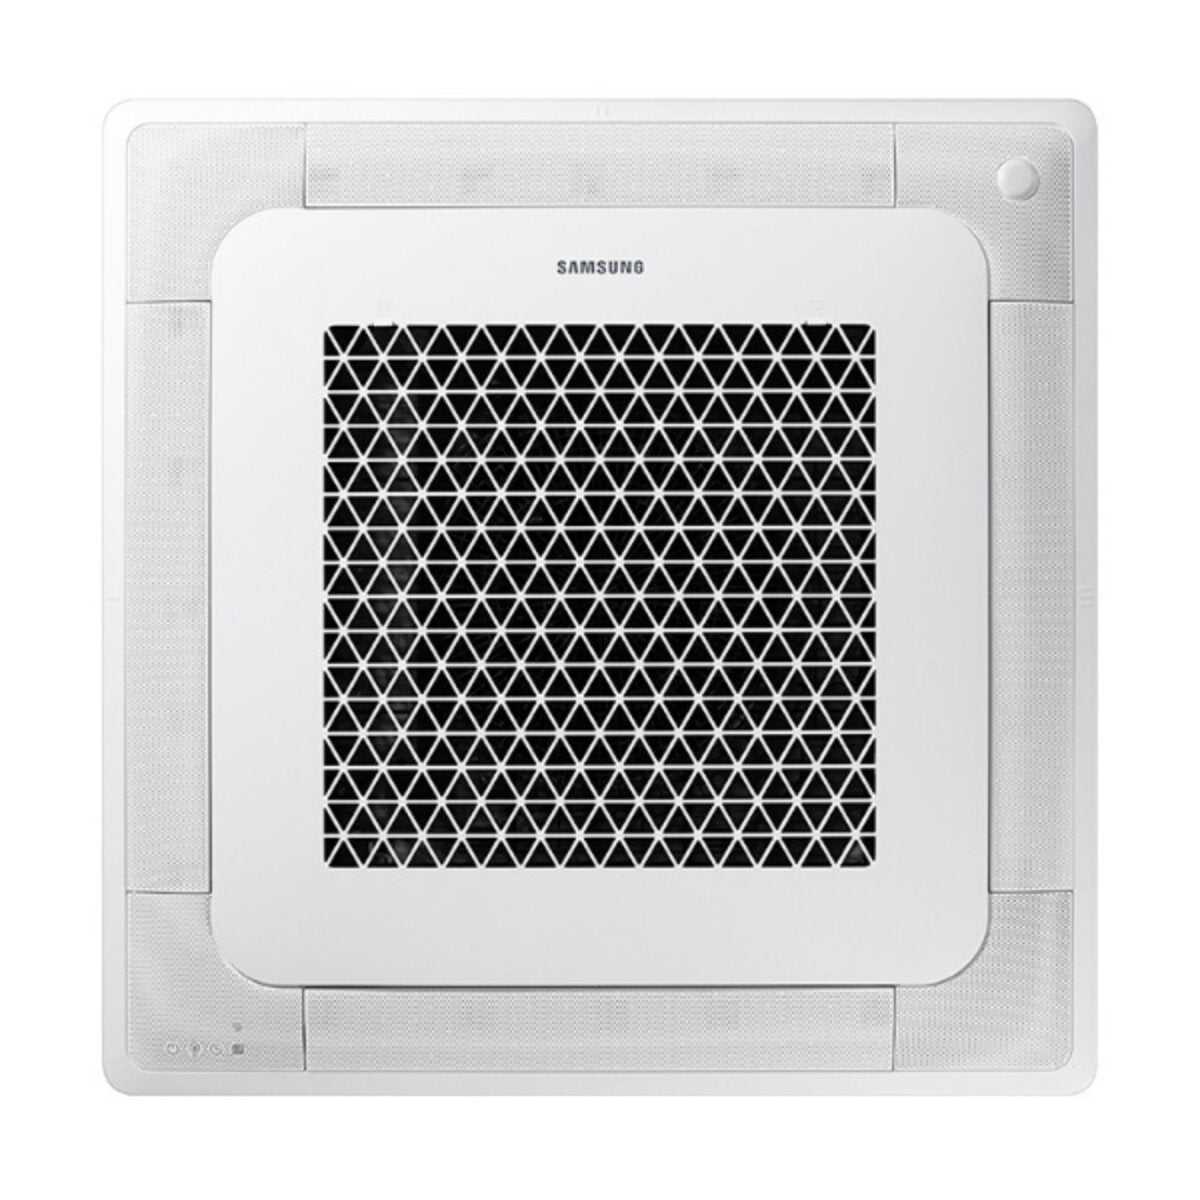 Samsung Air conditioner Windfree 4-way trial split 9000 + 12000 + 12000 BTU inverter A ++ outdoor unit 6.8 kW